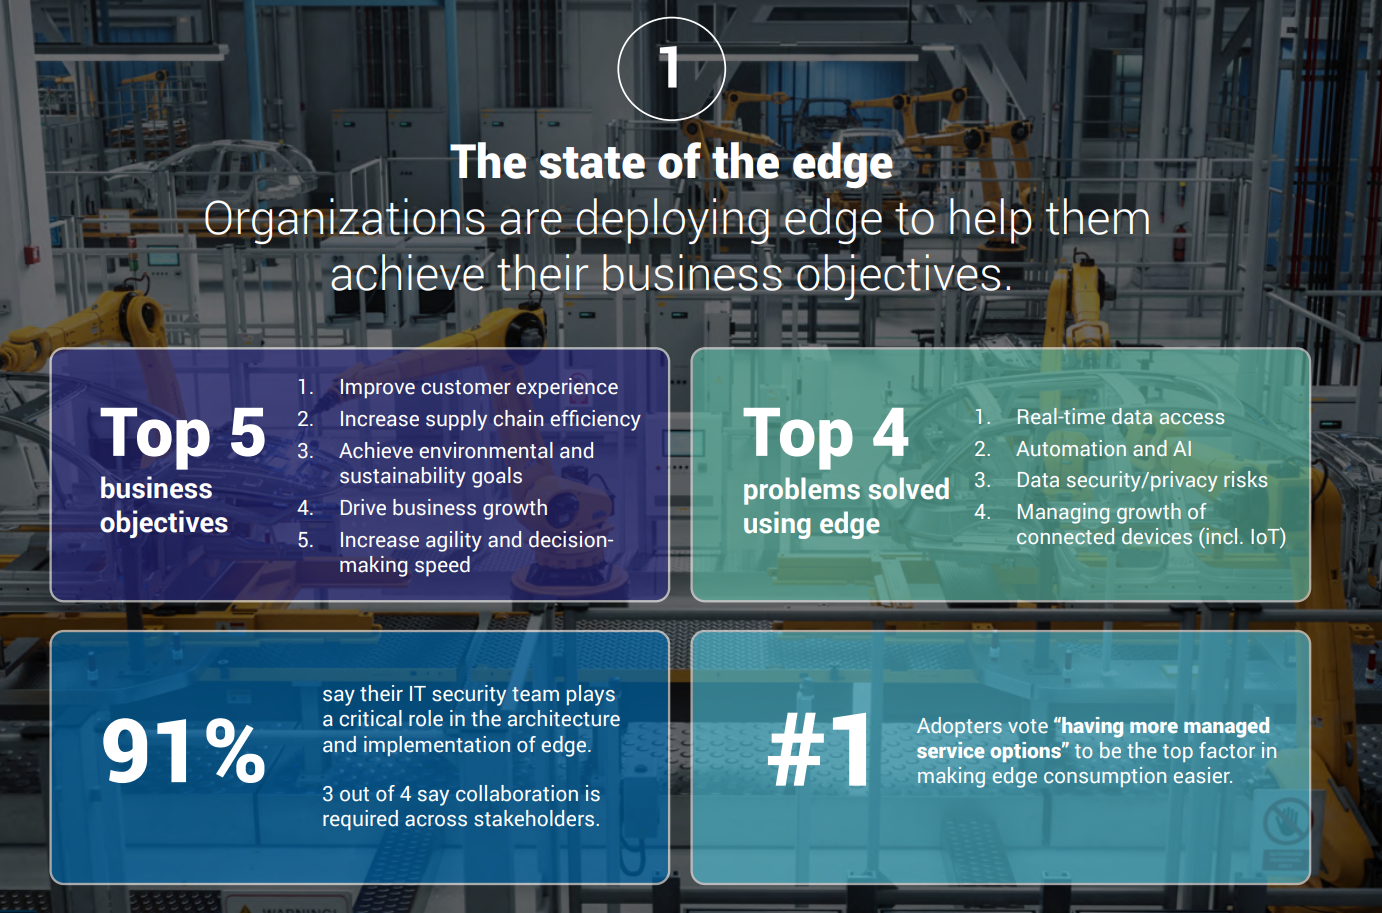 Studi Terbaru, Teknologi Edge Mampu Pecahkan Hampir 70% Tantangan Bisnis, Perusahaan pun Percepat Adopsi Edge